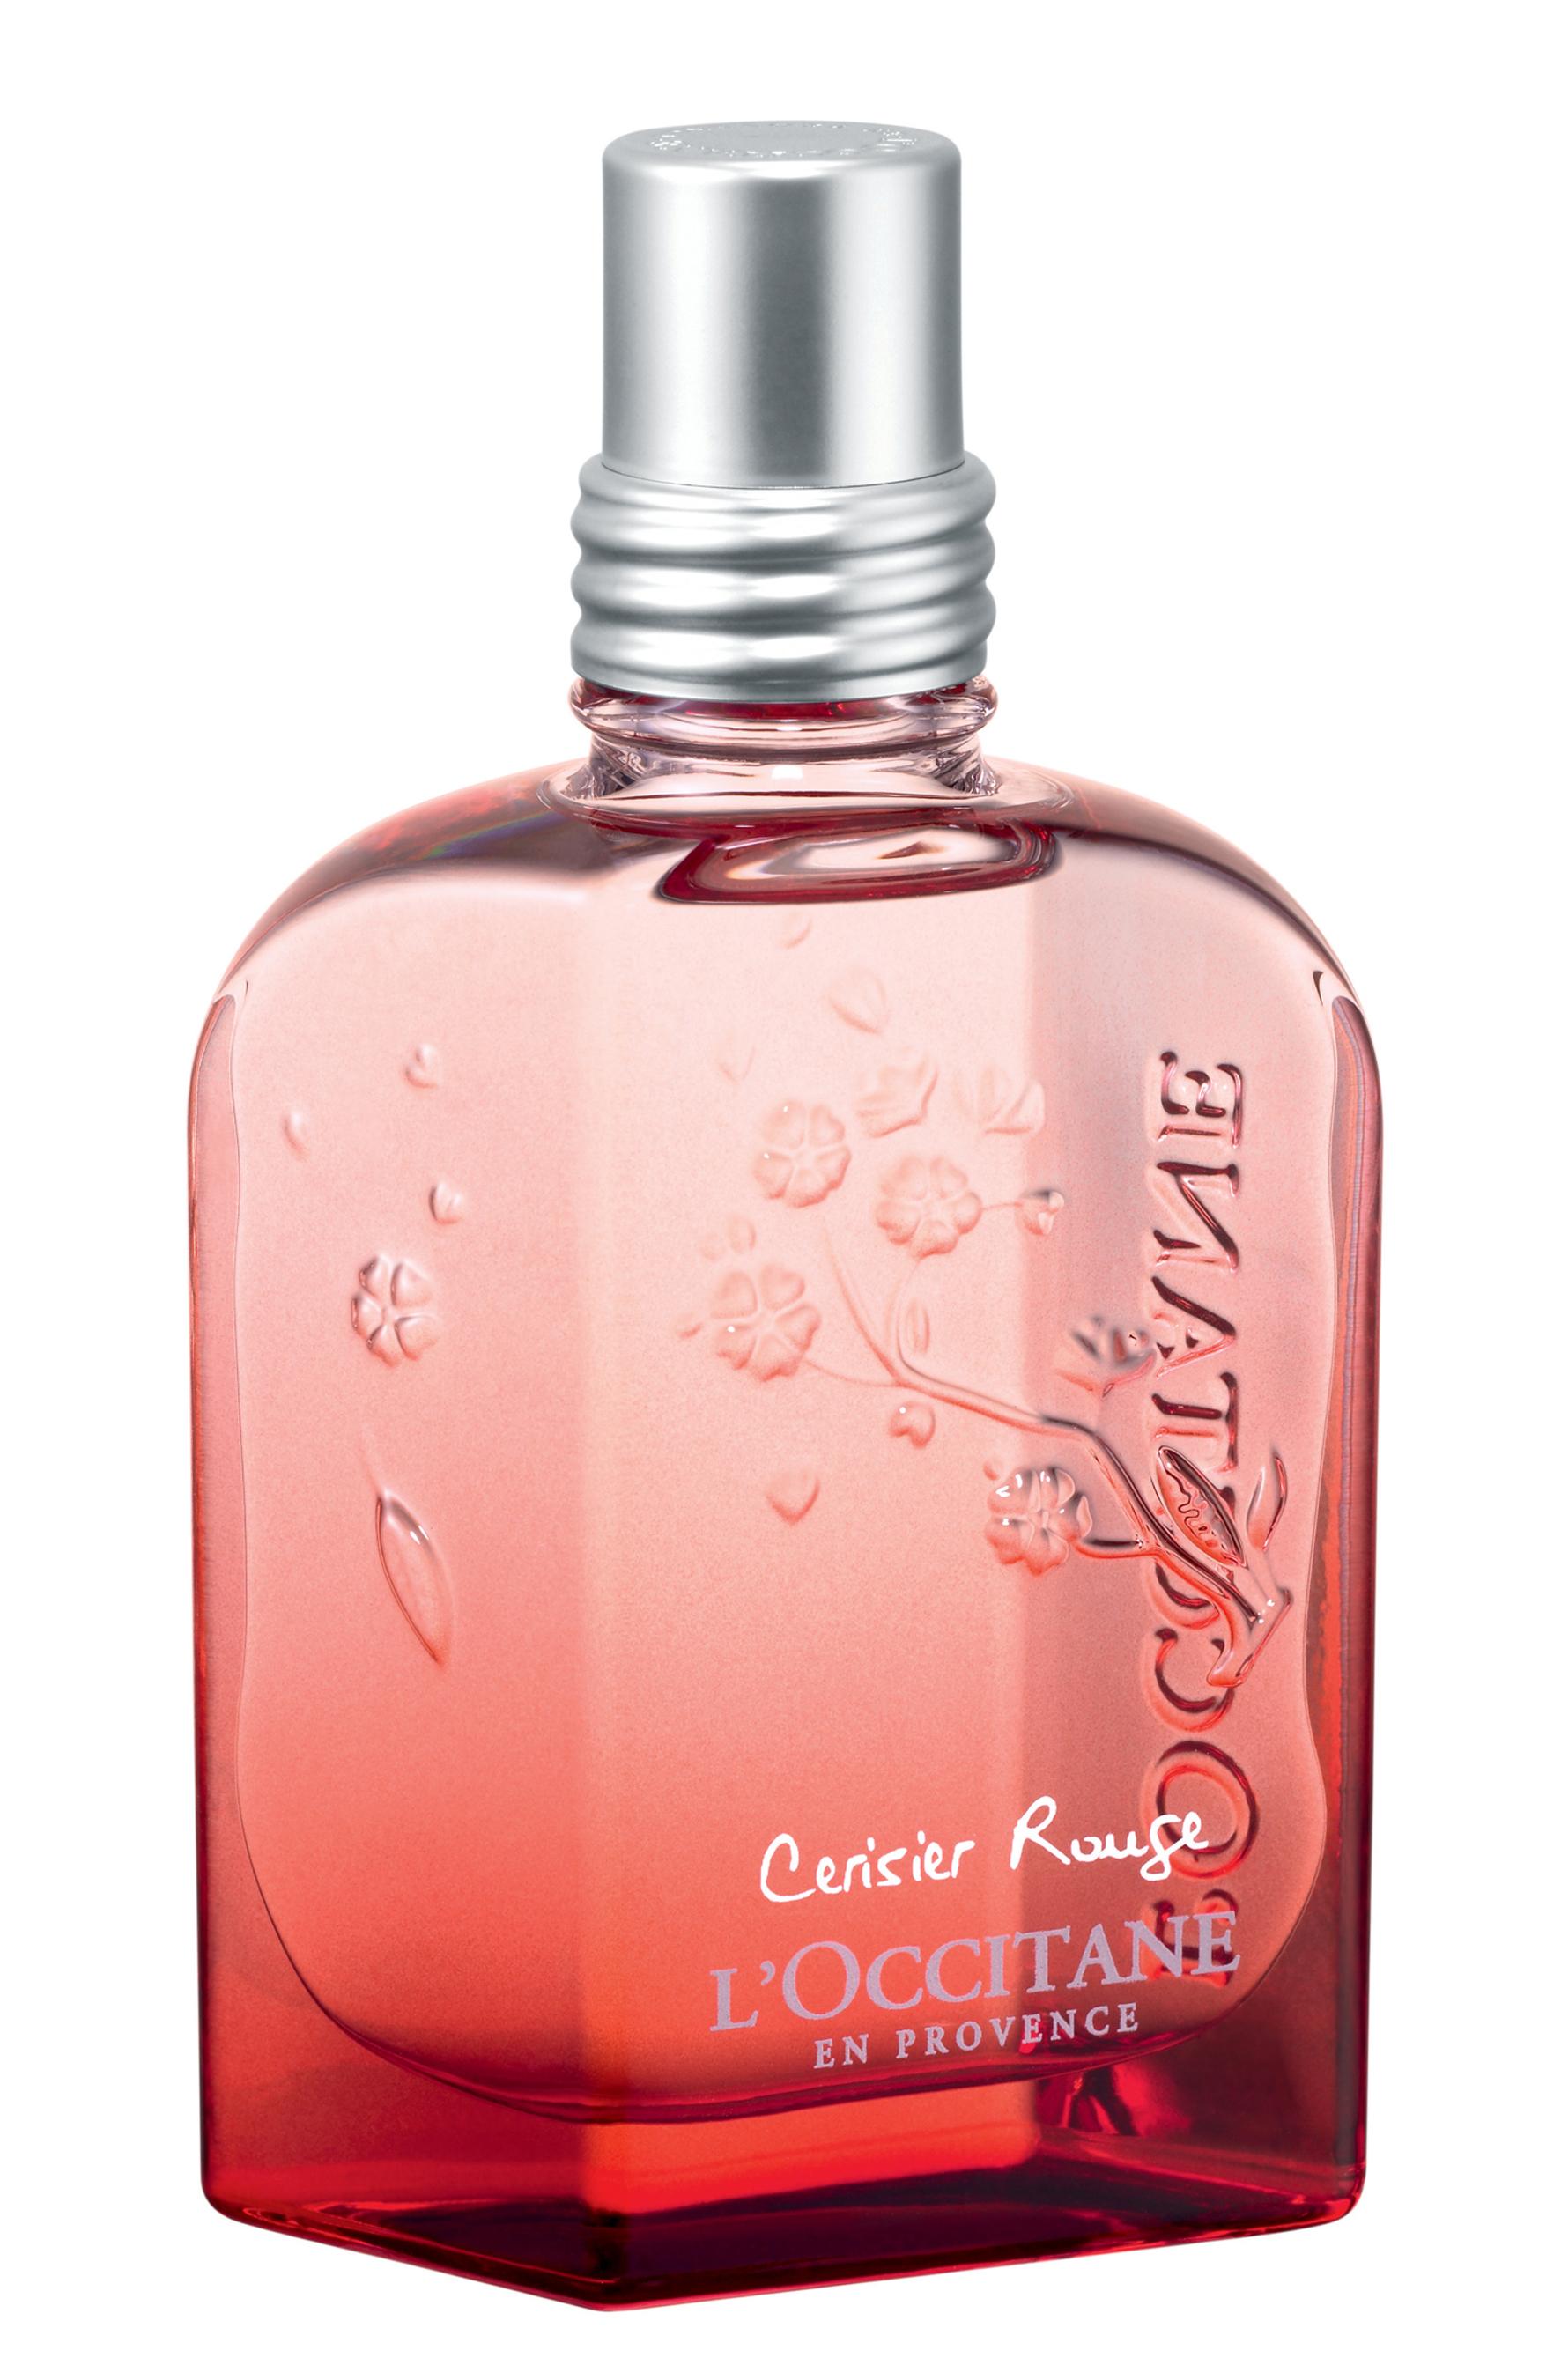 Parfum Cerisier Rouge - L'Occitane - 45€